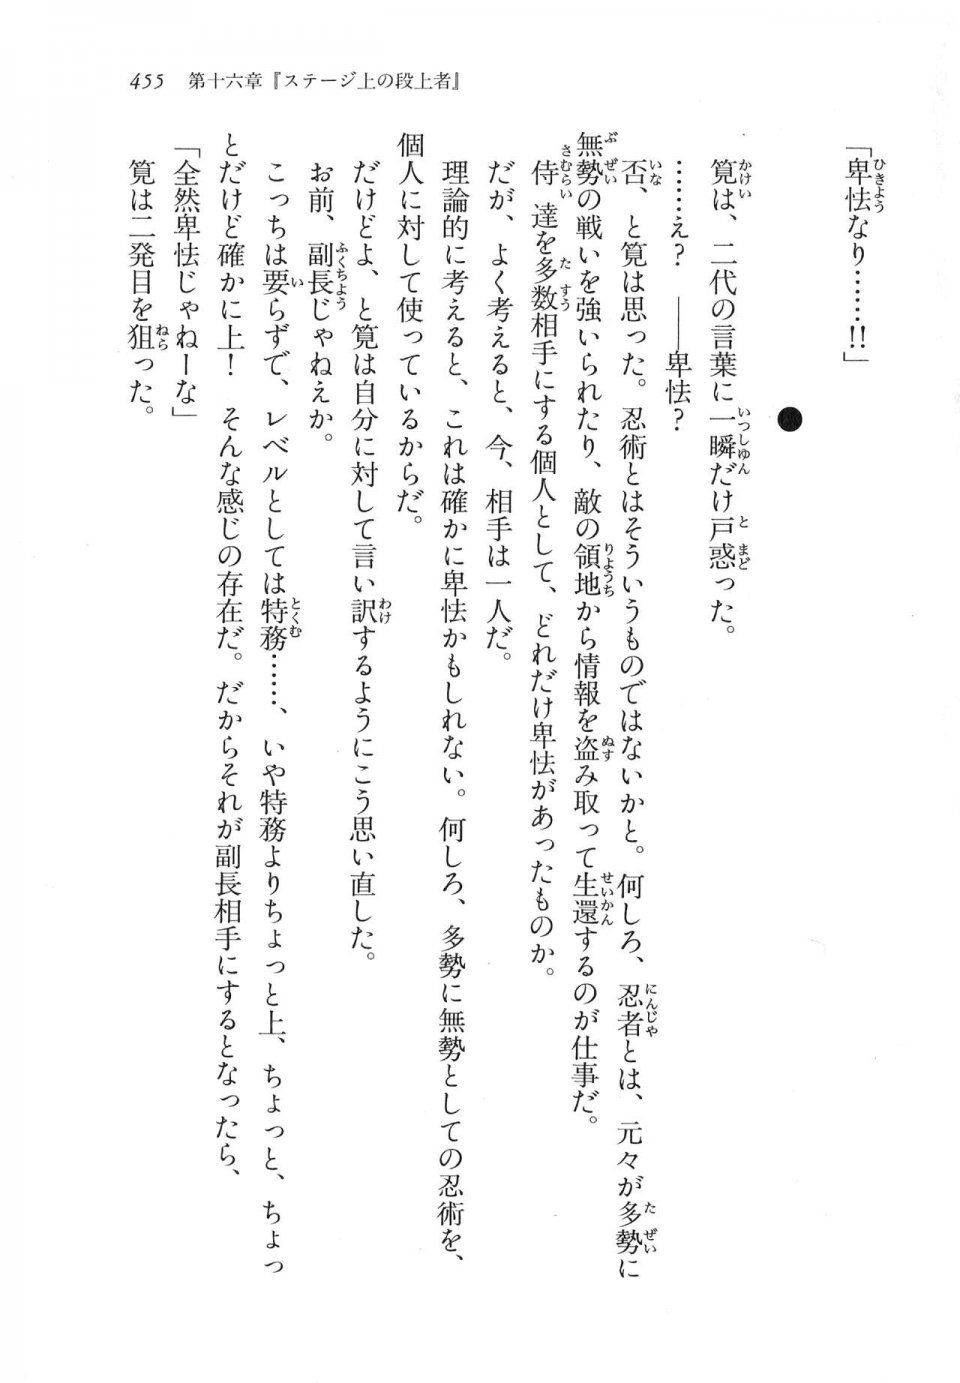 Kyoukai Senjou no Horizon LN Vol 11(5A) - Photo #455